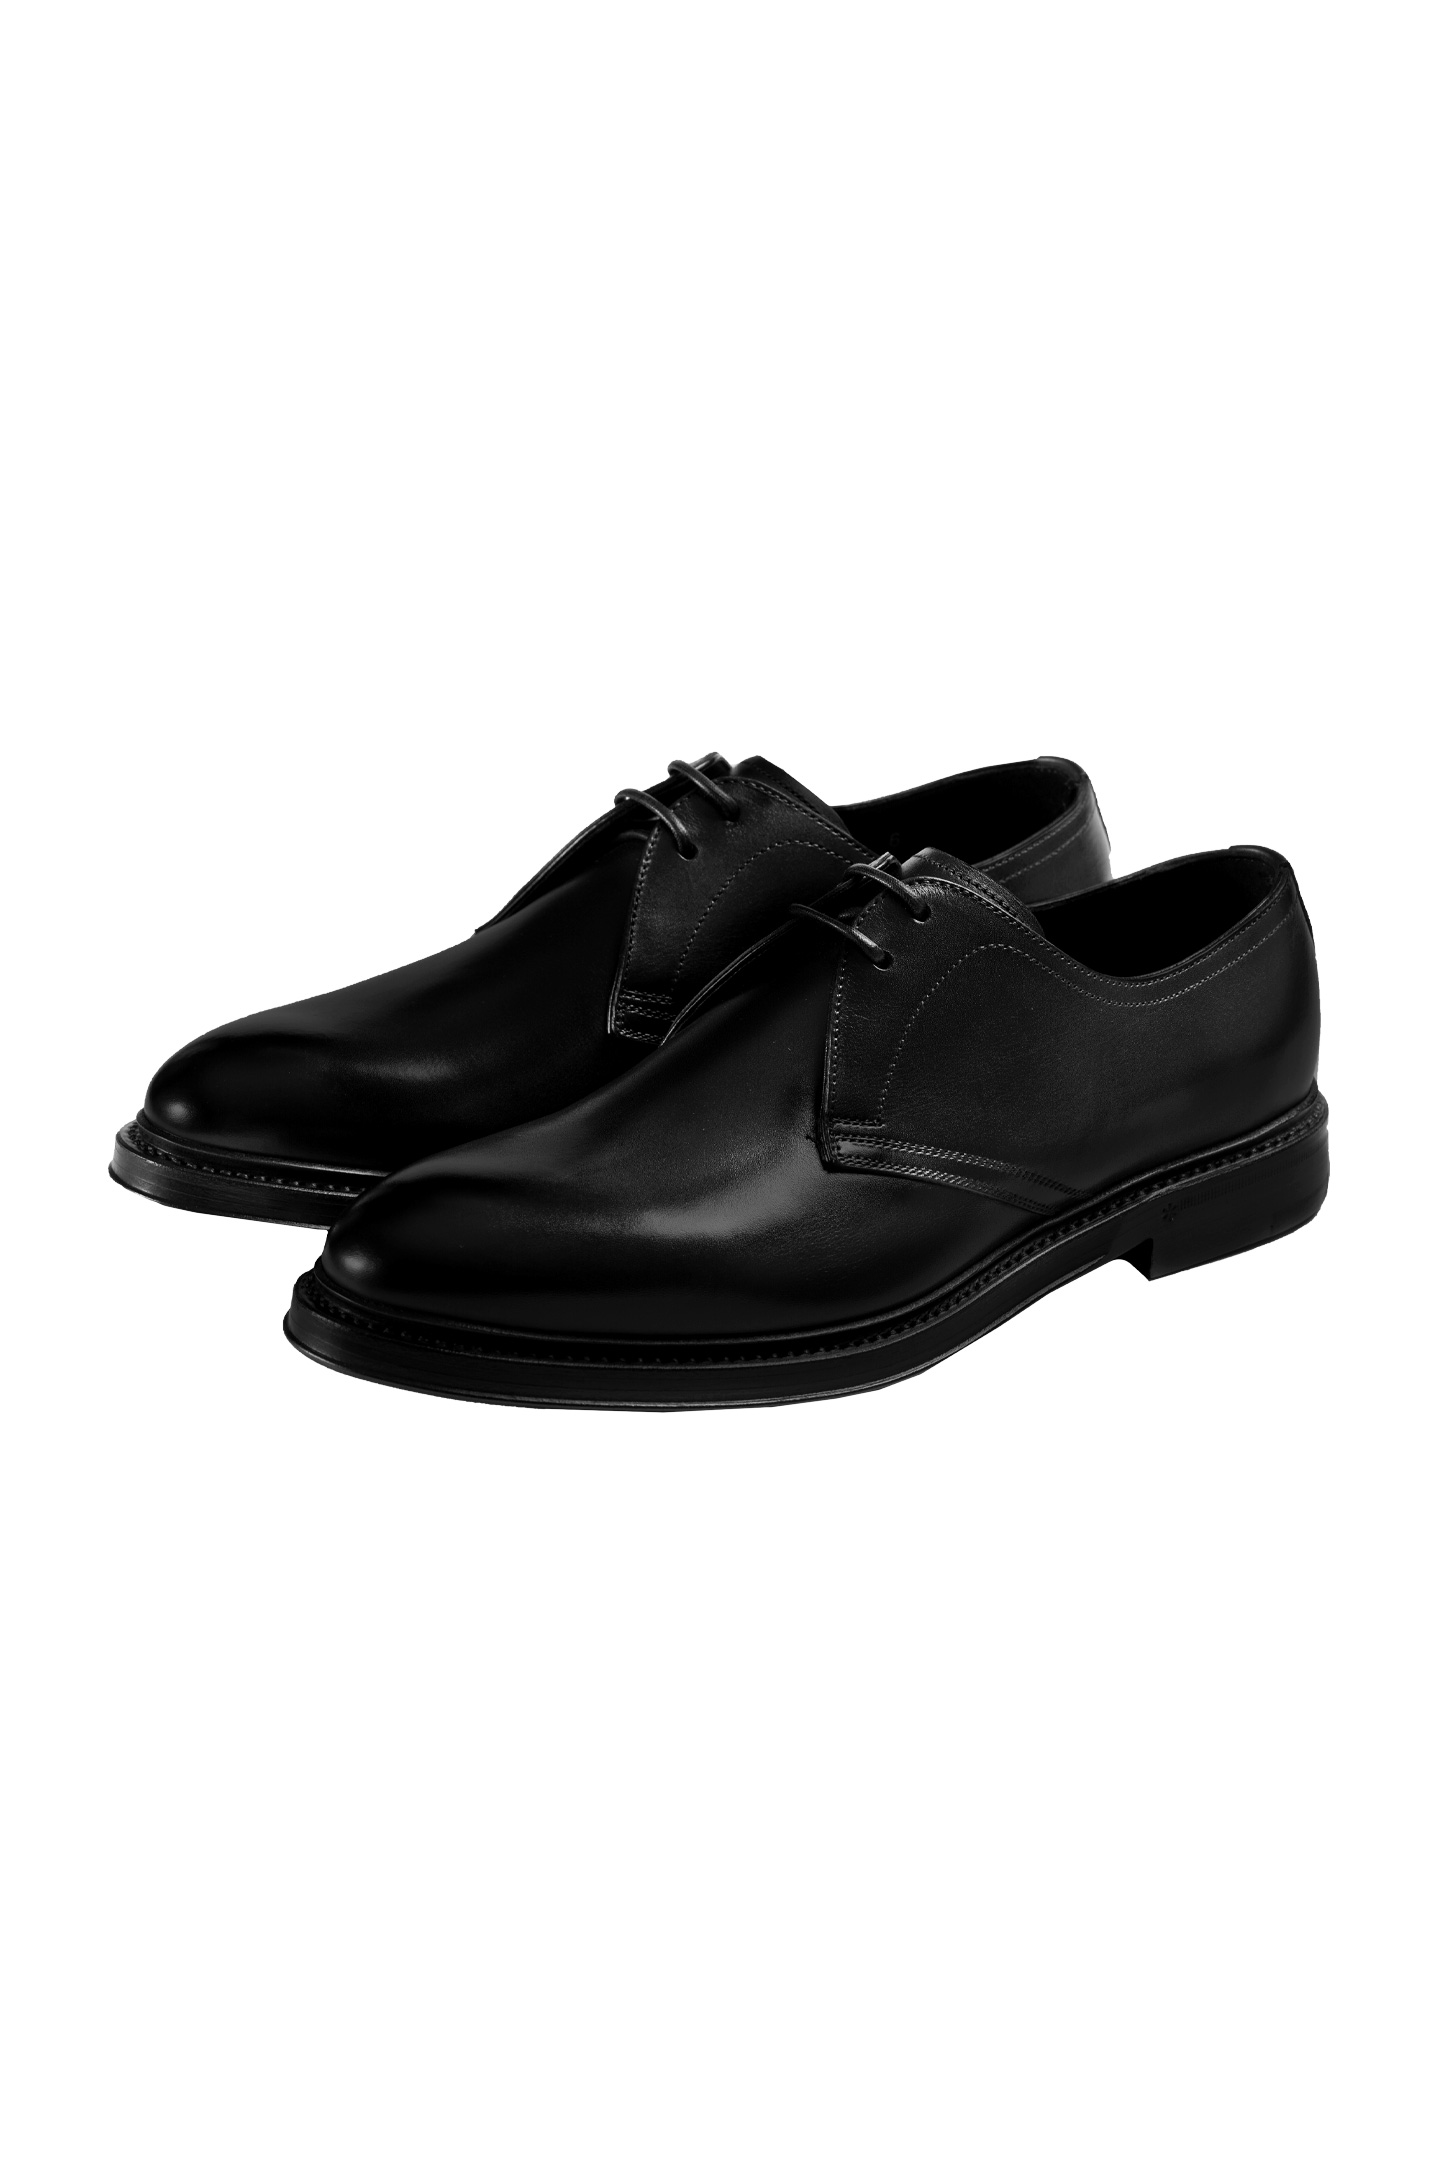 Туфли DOLCE & GABBANA A10646 AX038, цвет: Черный, Мужской